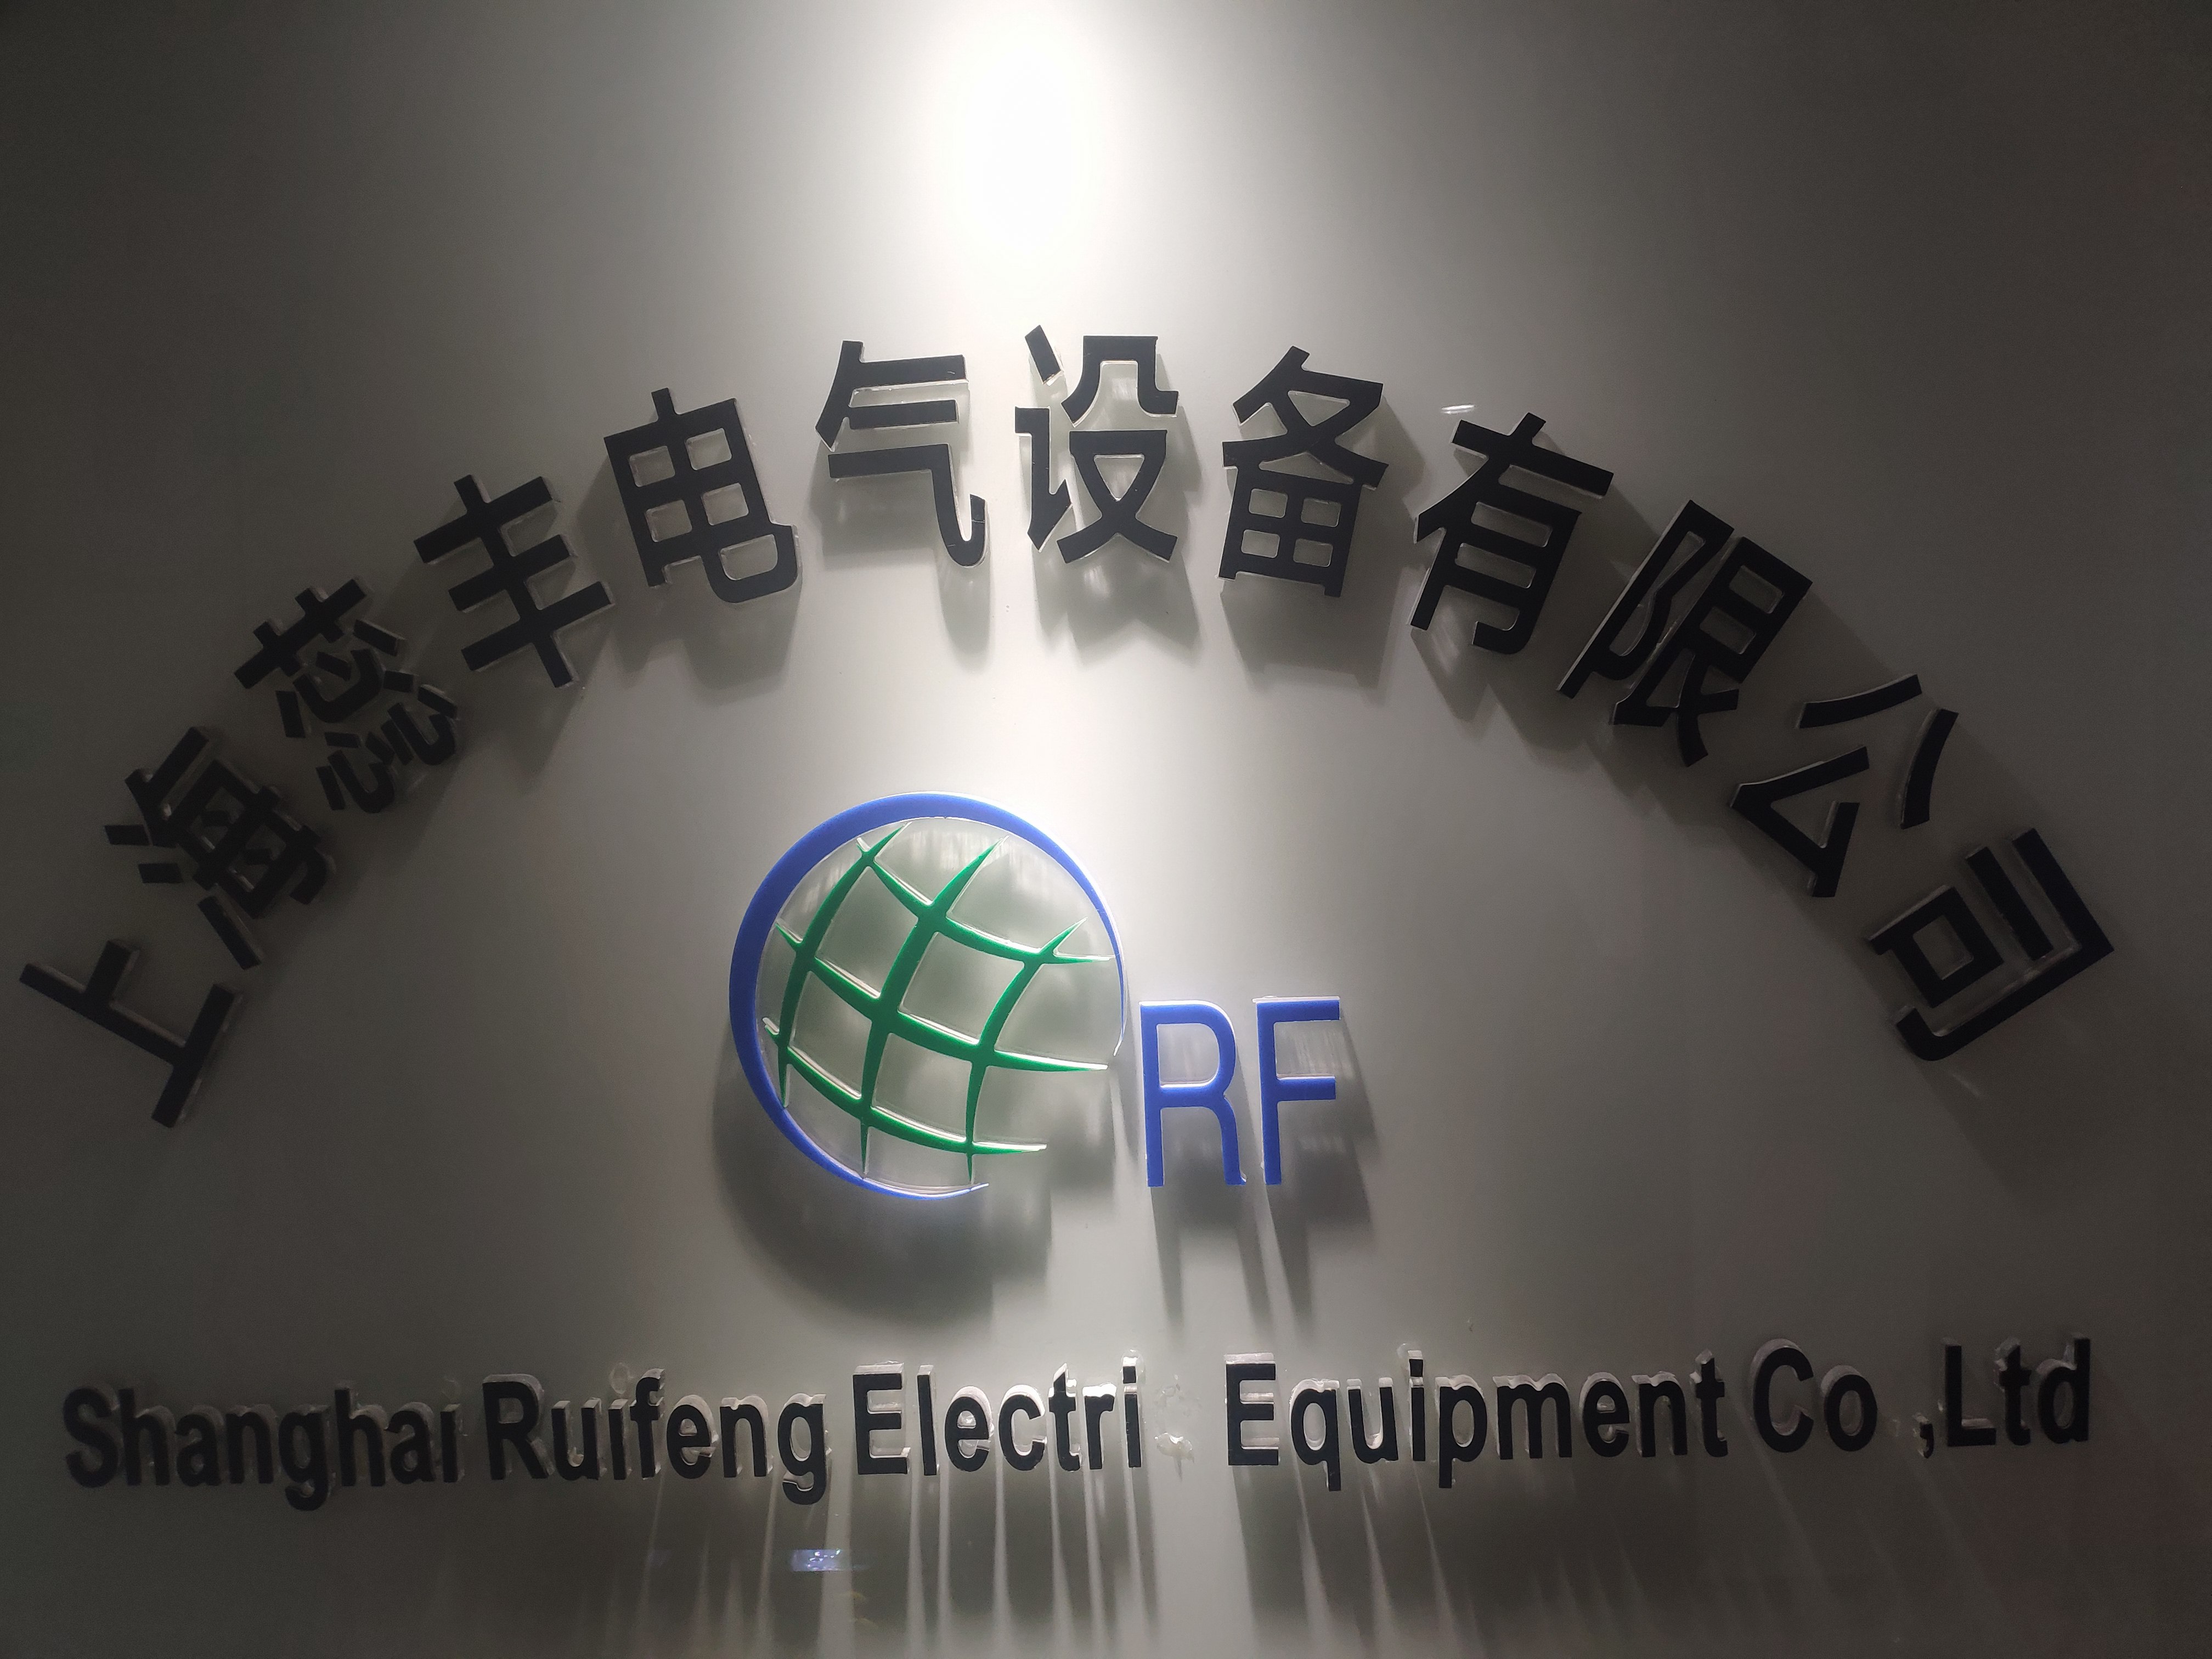 上海蕊丰电气设备有限公司